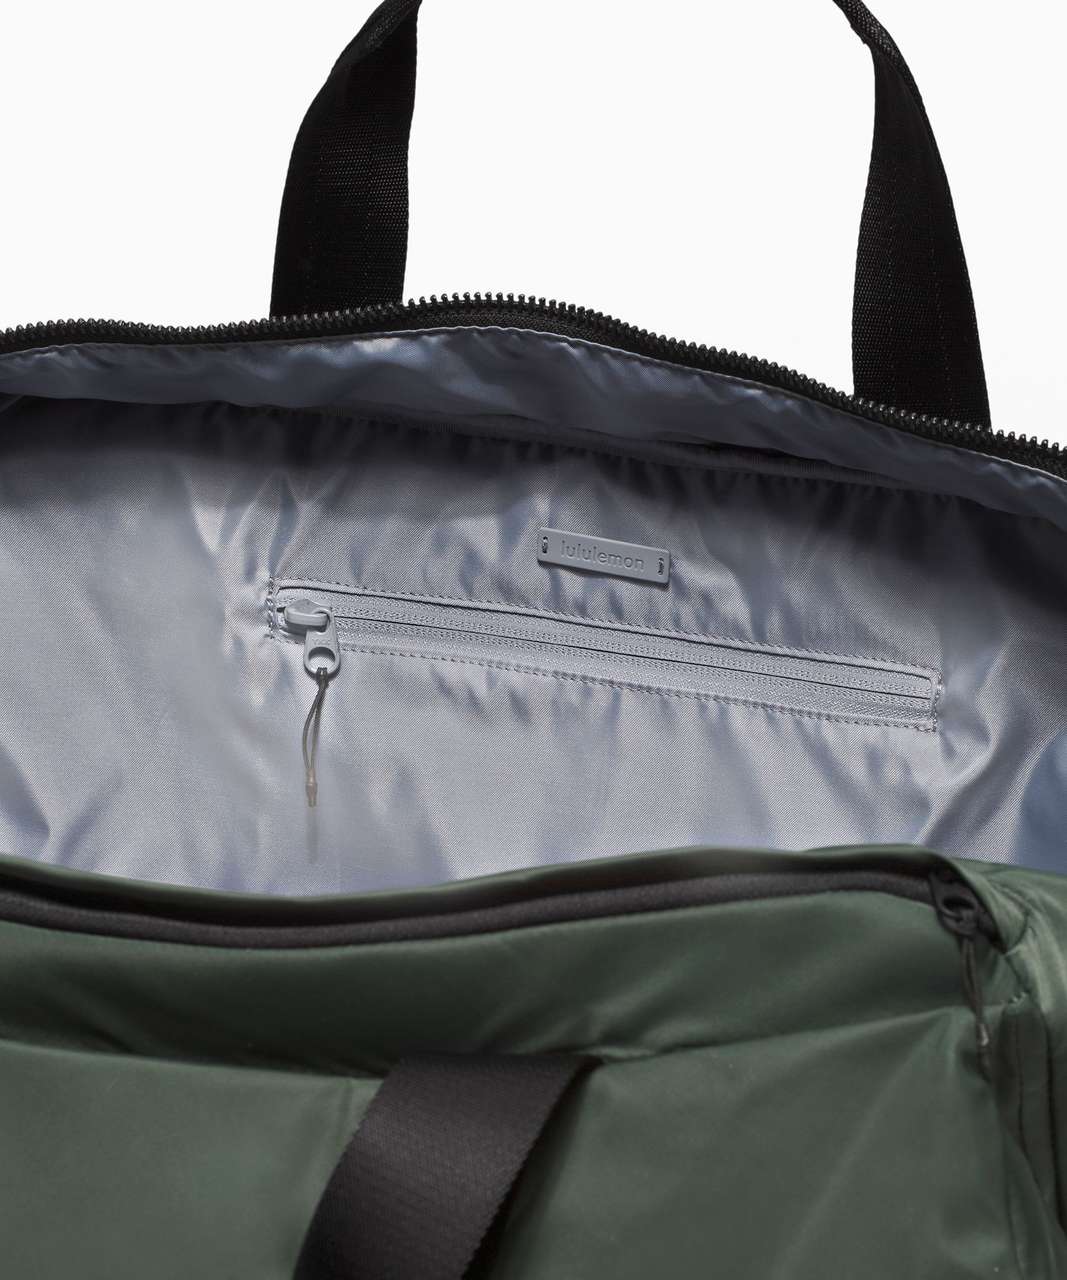 Lululemon Urban Nomad Large Duffle Bag 30L - Smoked Spruce / Black